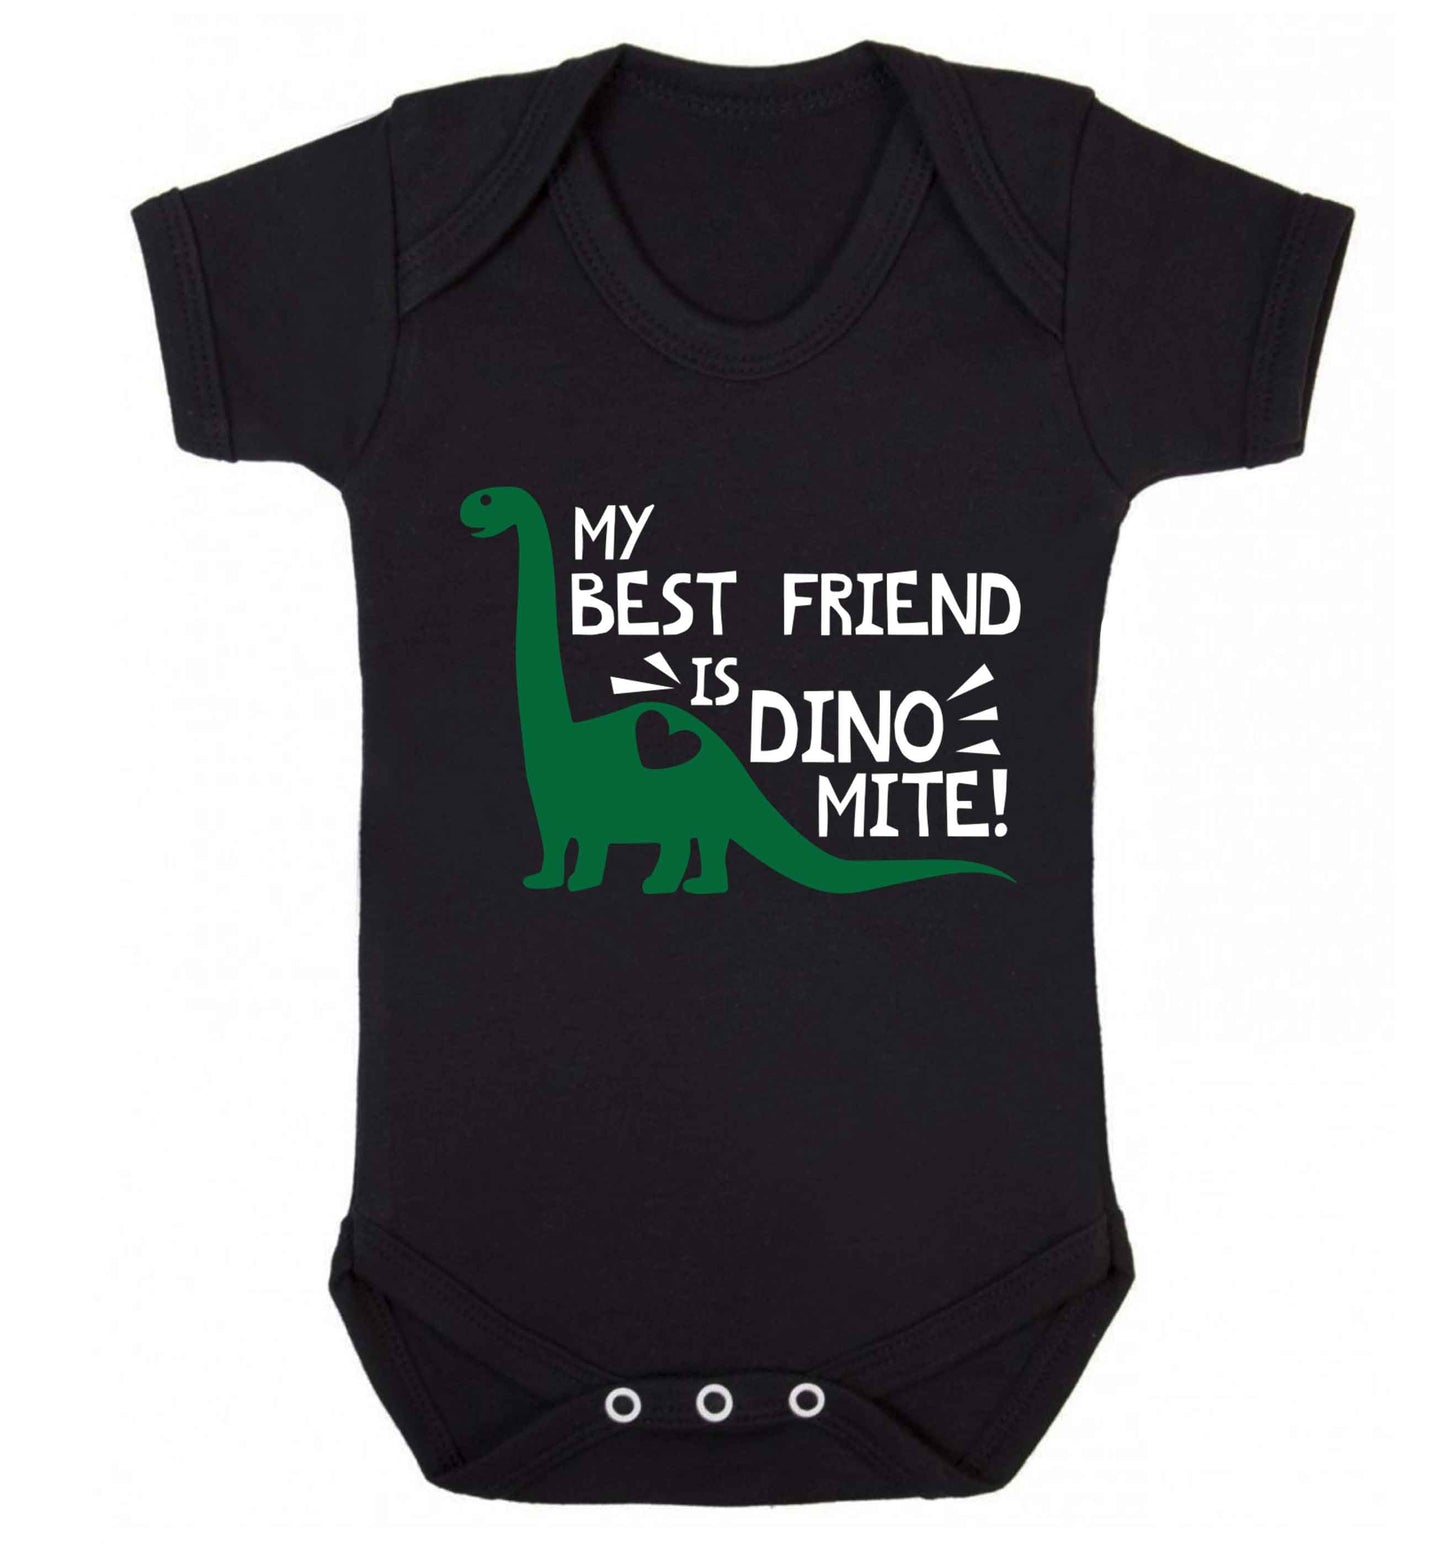 My best friend is dinomite! Baby Vest black 18-24 months